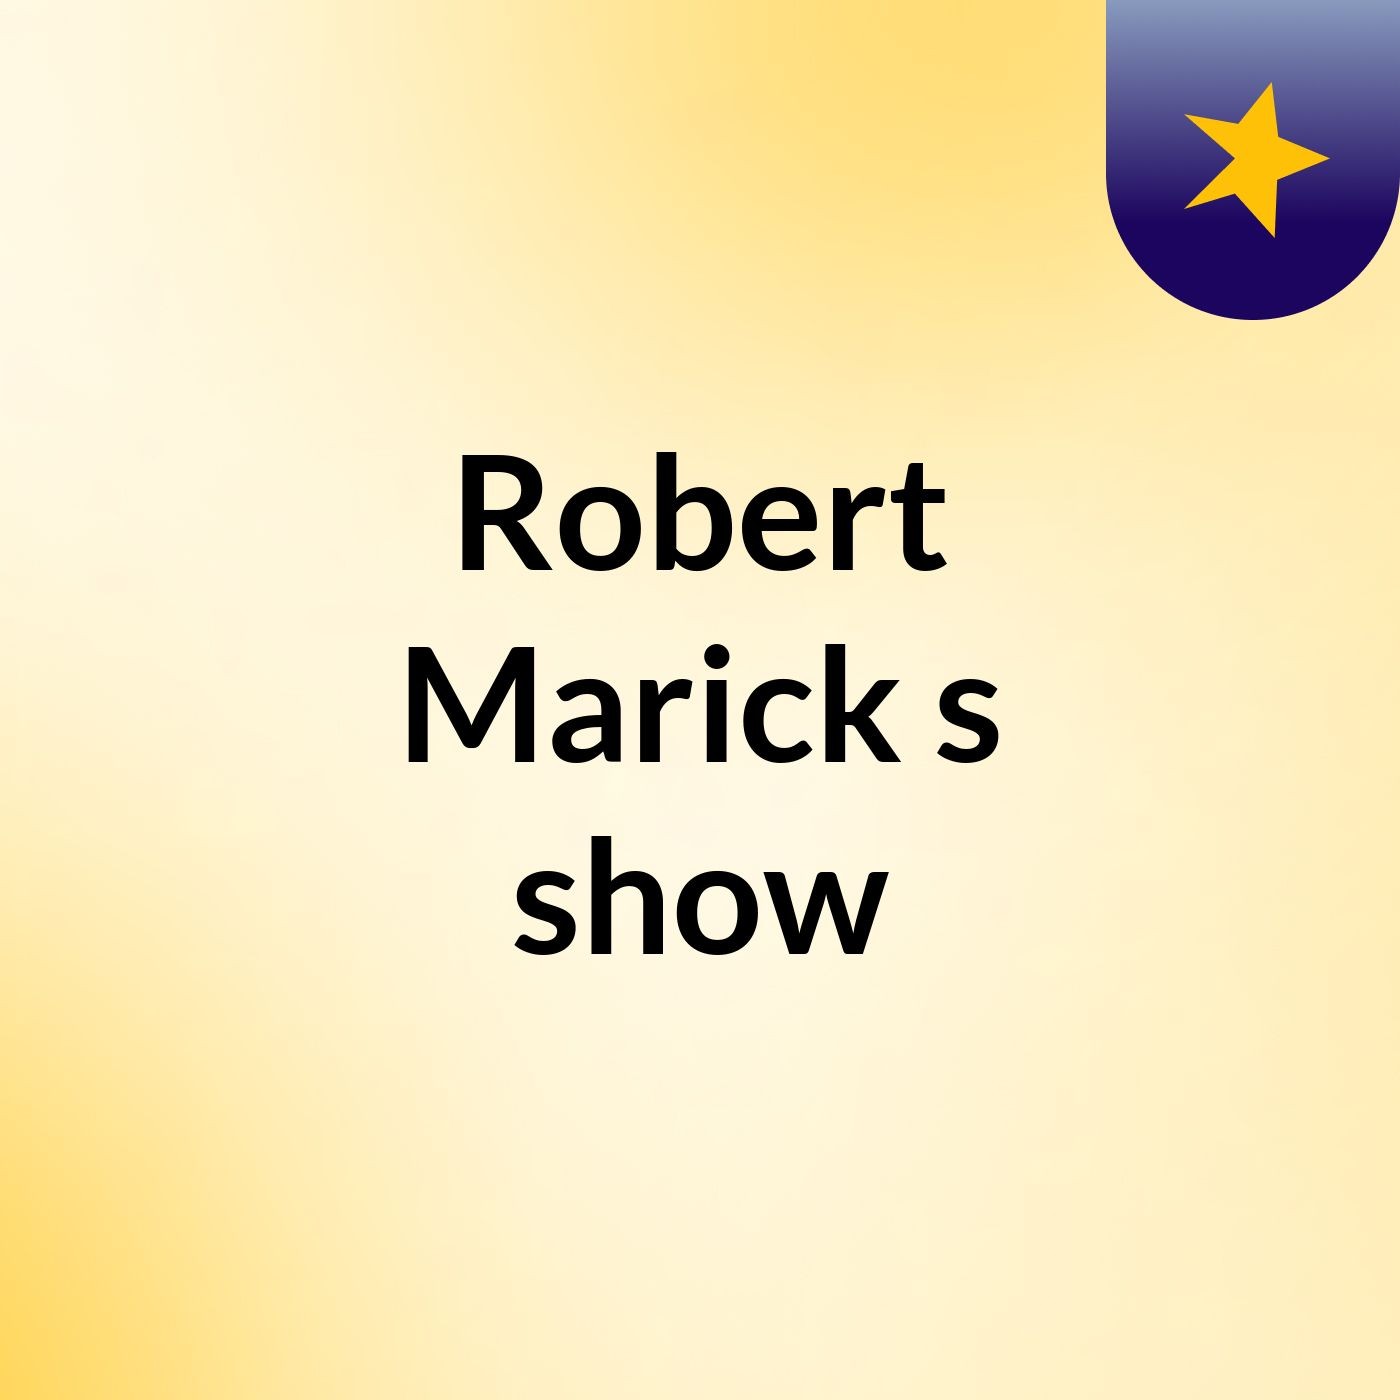 Episode 4 - Robert Marick's show